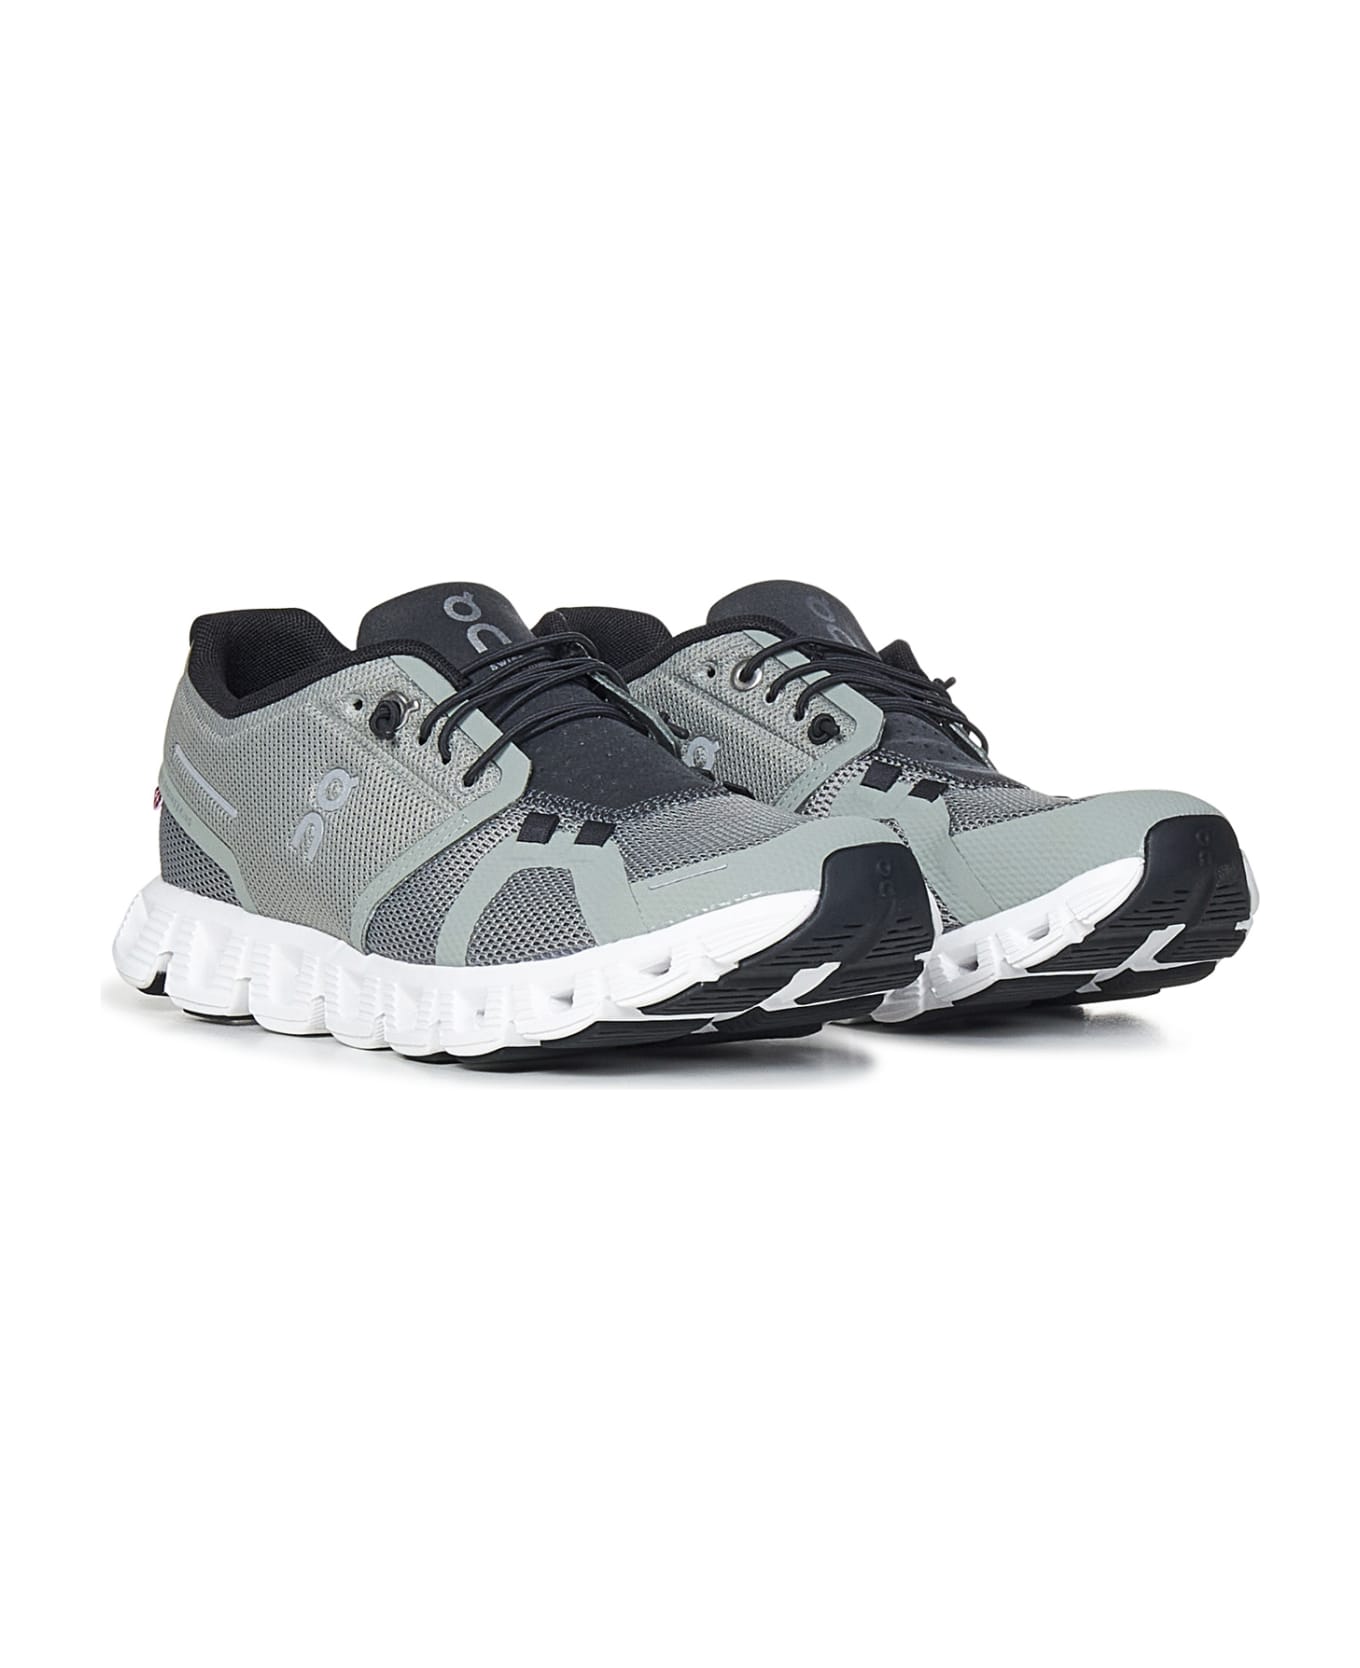 ON Running Cloud 5 Sneakers - Grey